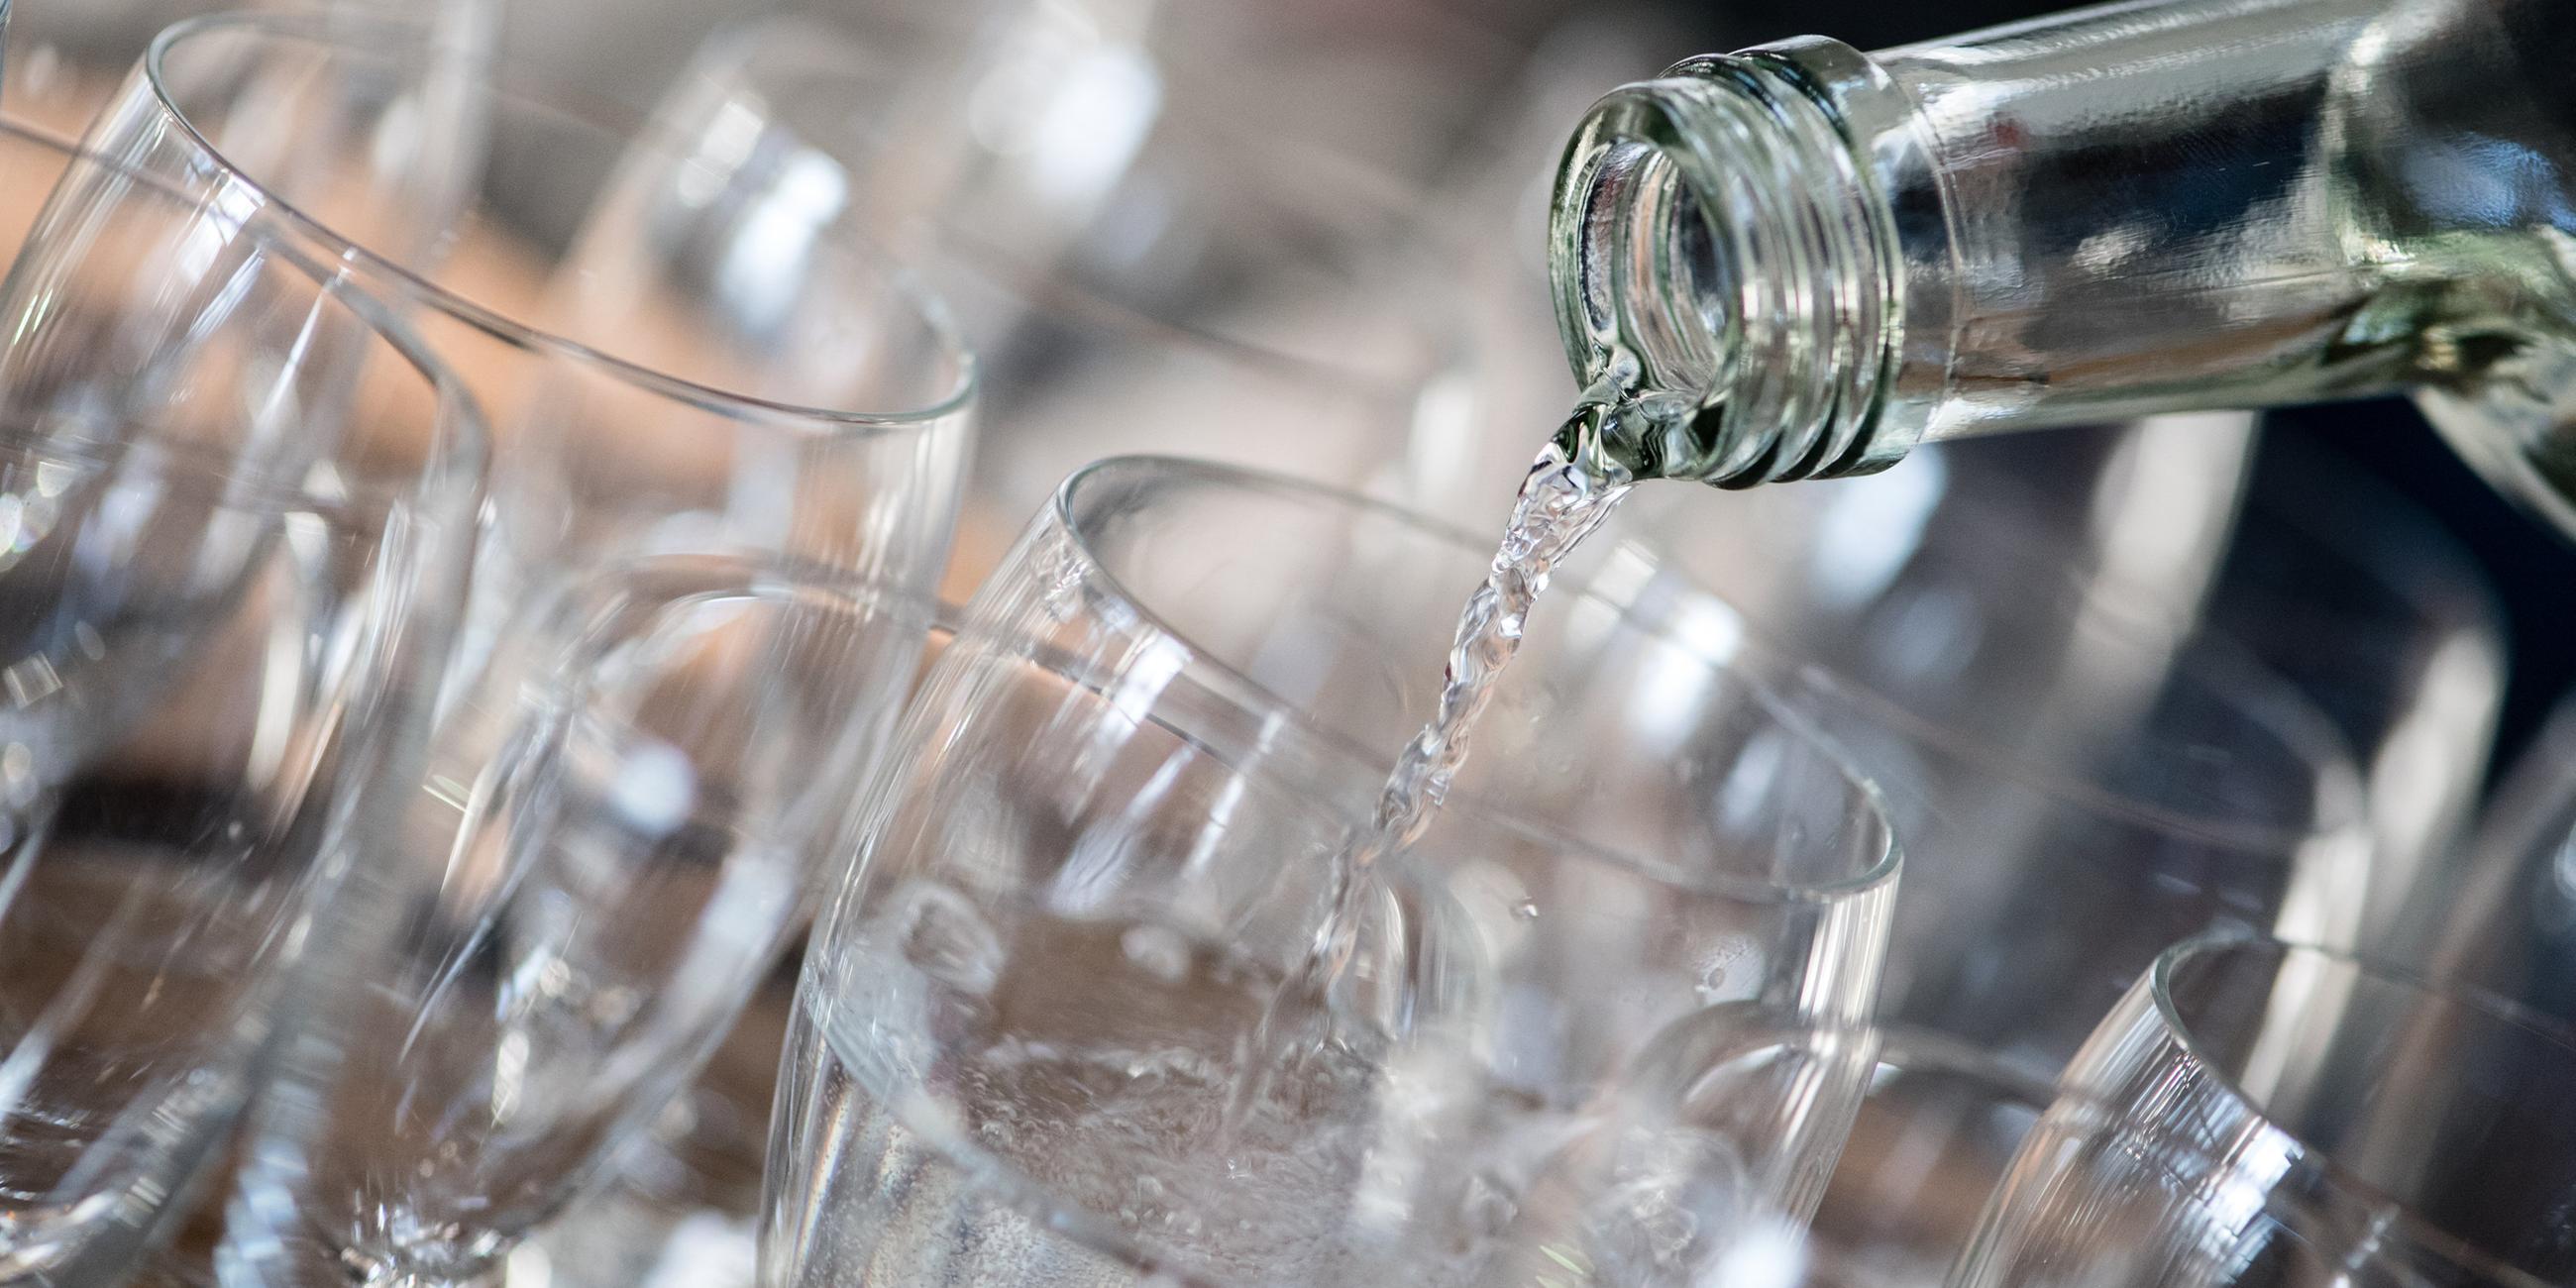 Mehrere Gläser stehen nebeneinander auf einem Tablet. Aus einer Glasflasche wird Wasser in ein Glas gegossen.